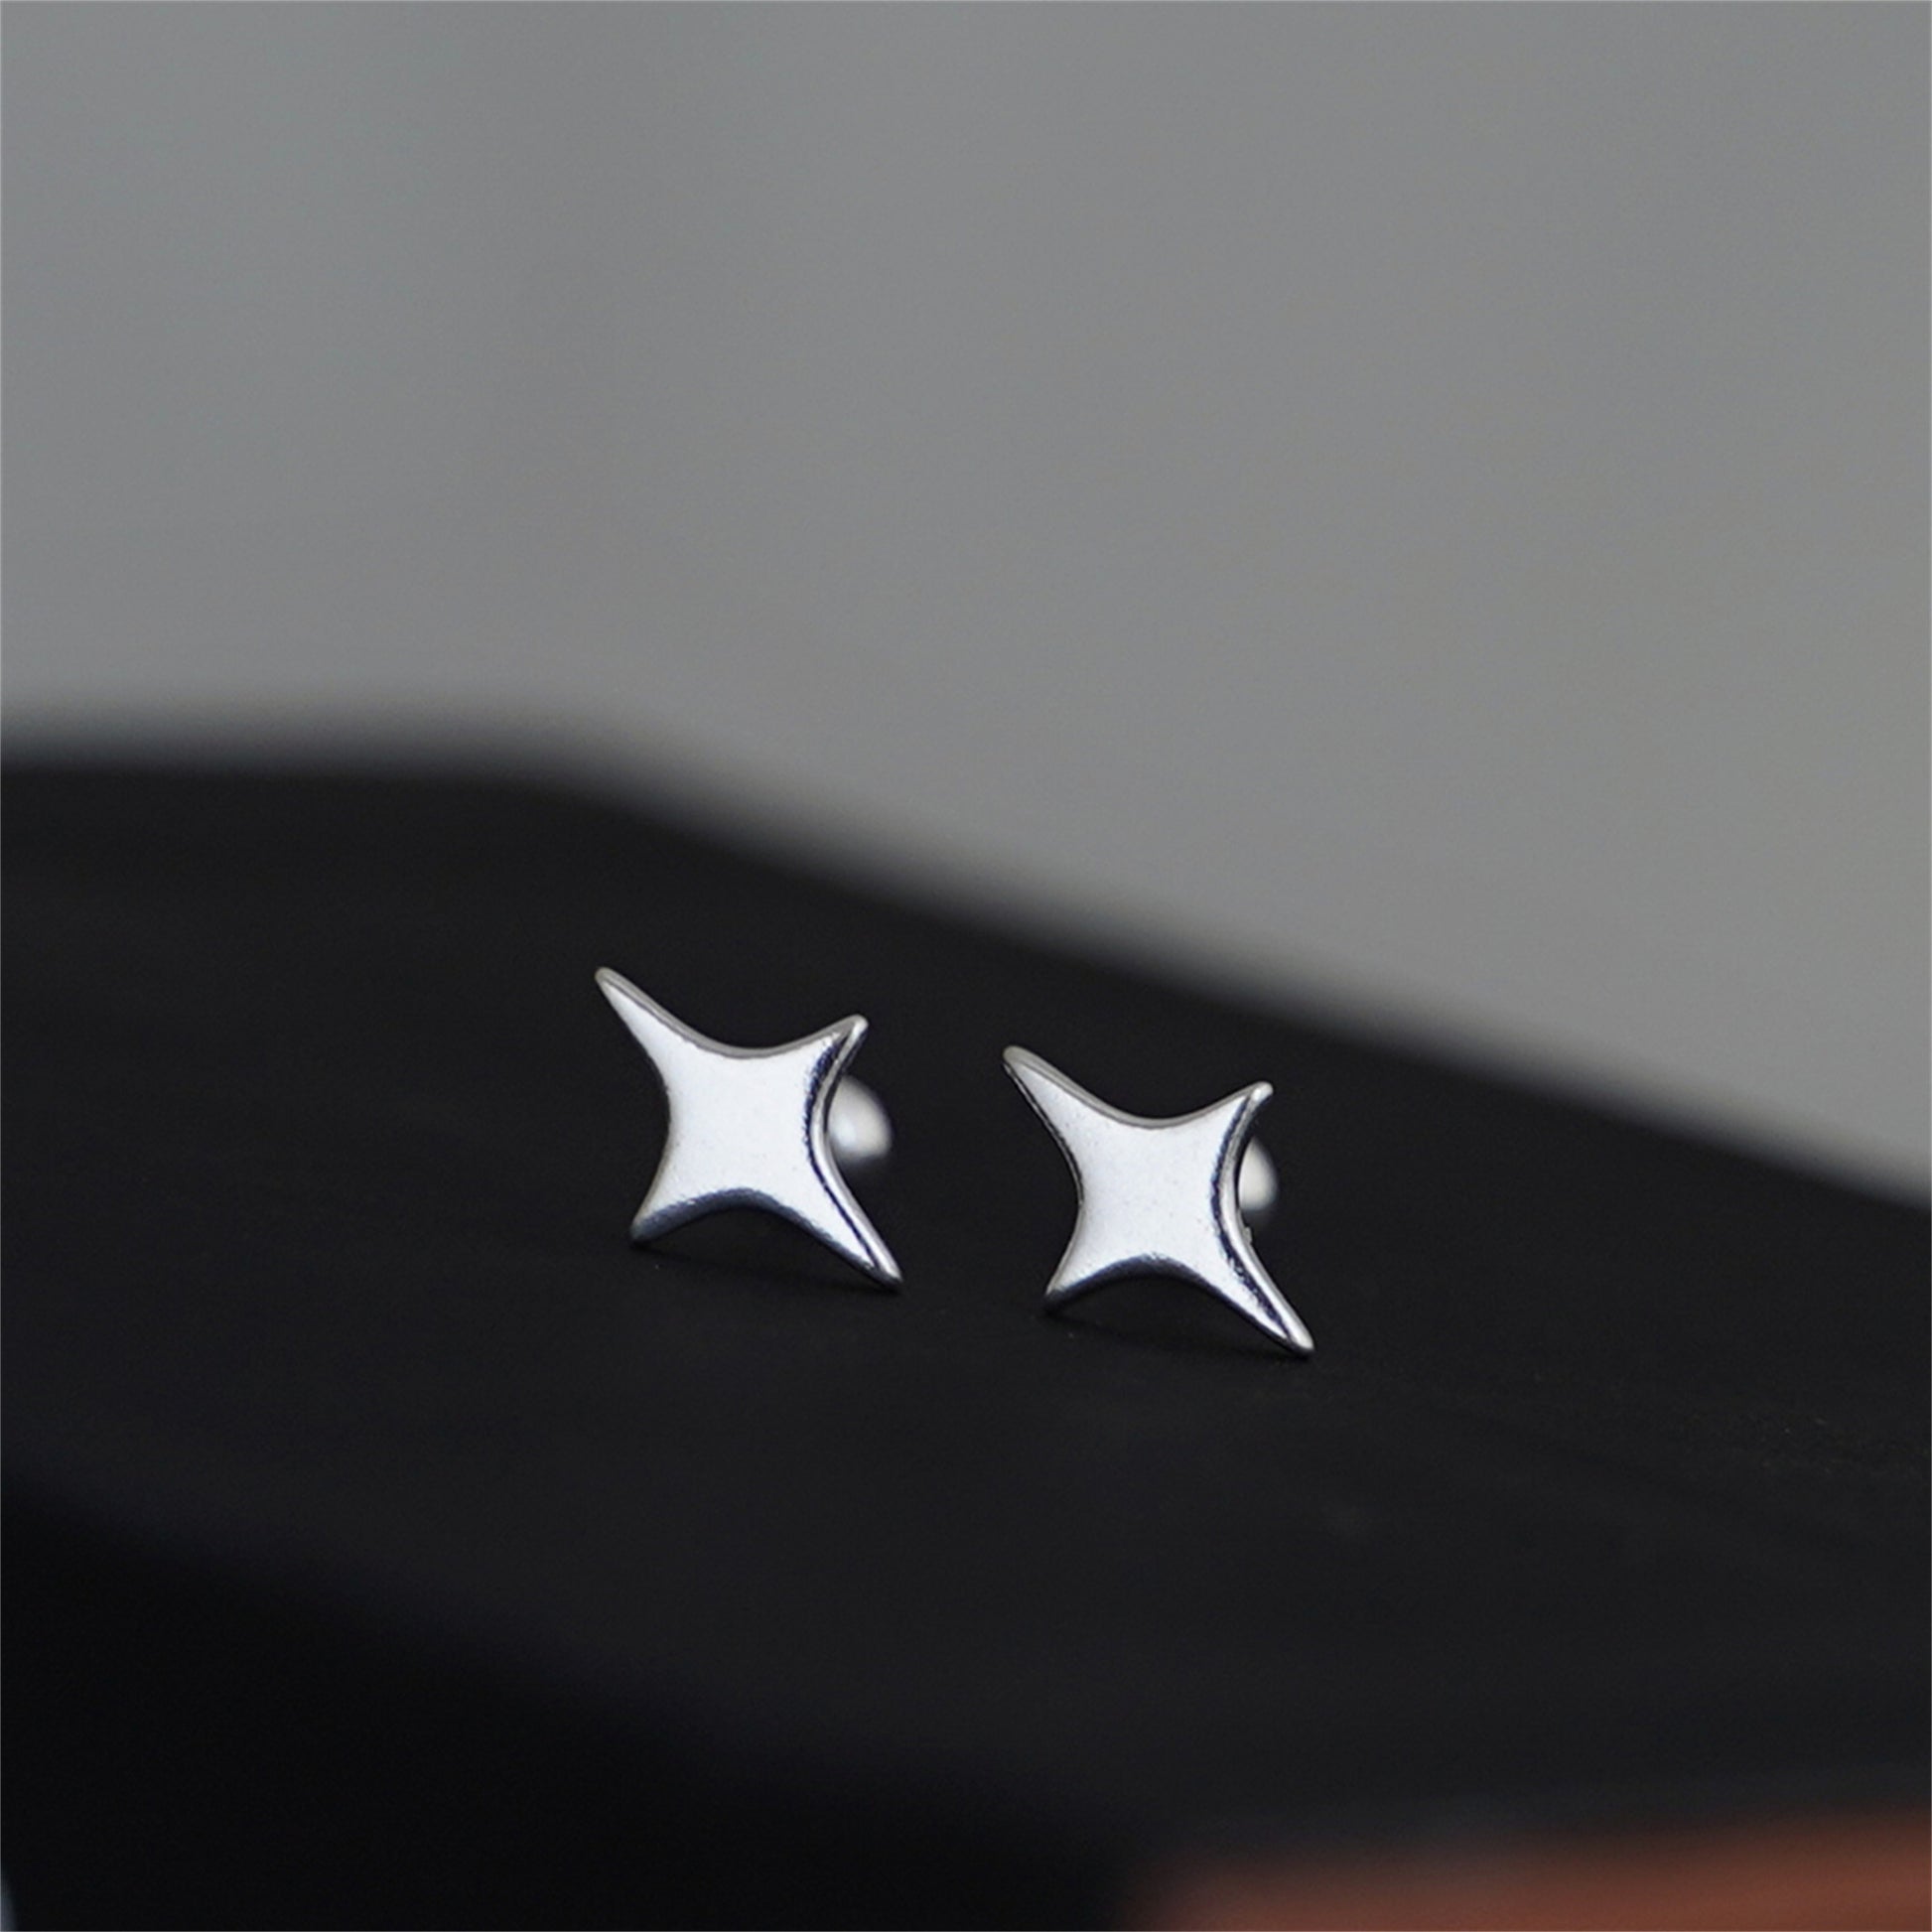 Sterling Silver Screw Back Earrings - Star